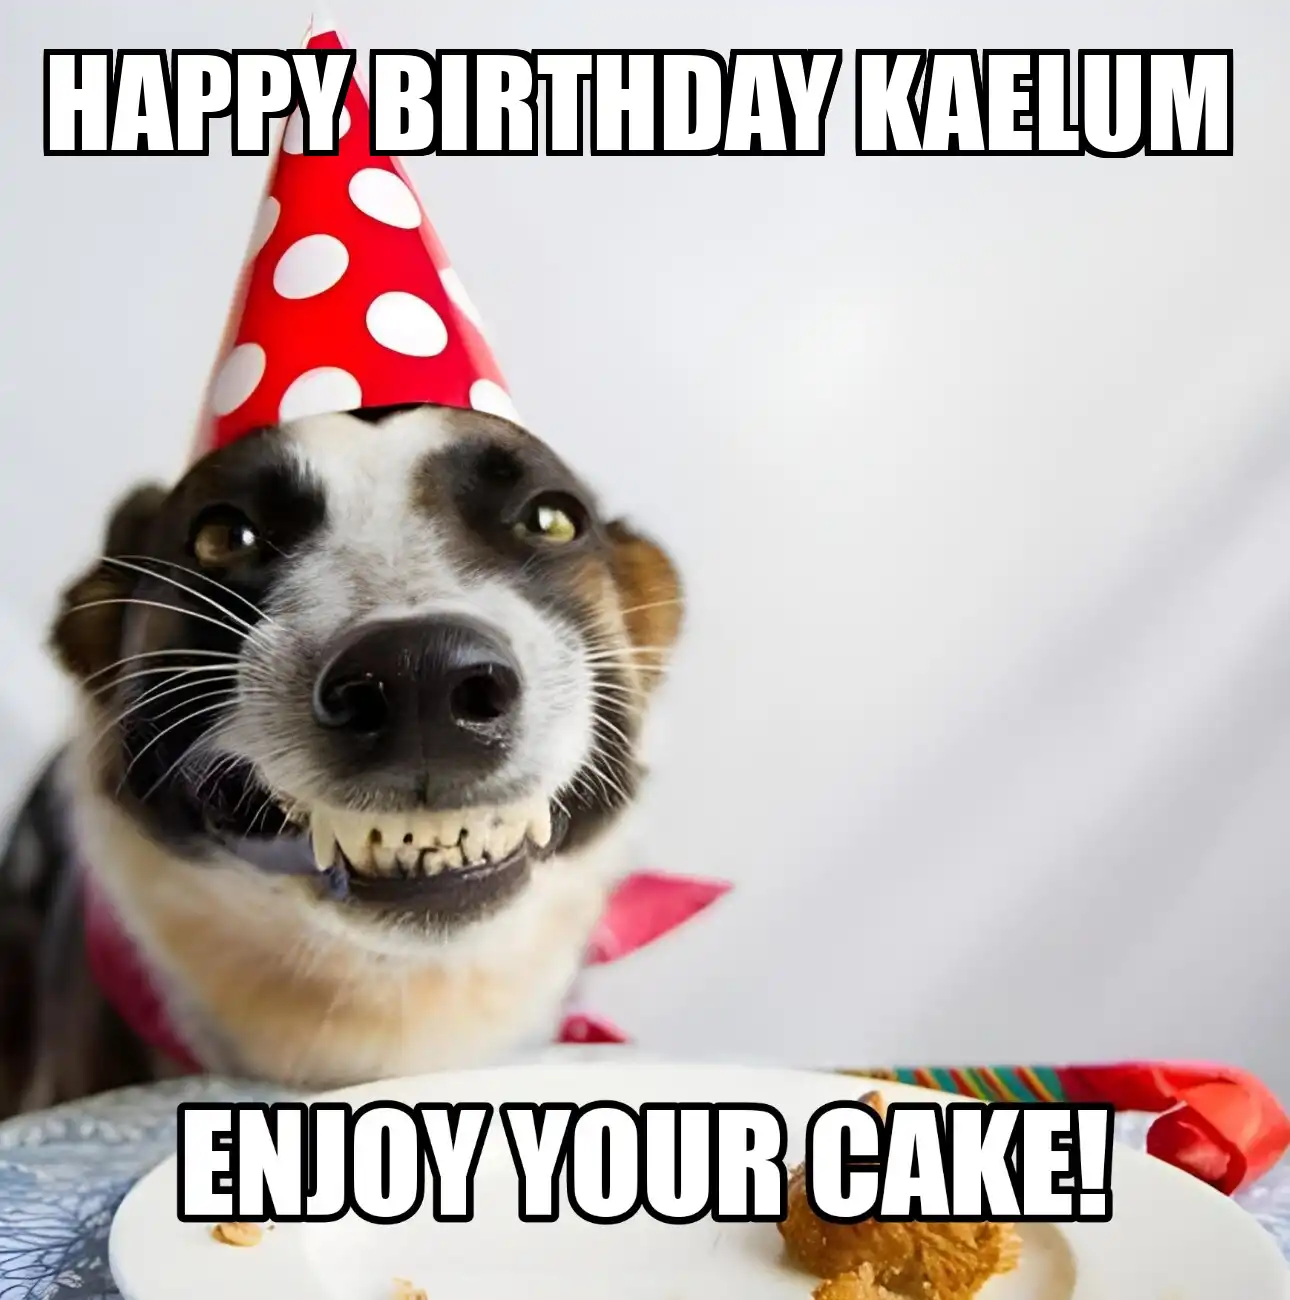 Happy Birthday Kaelum Enjoy Your Cake Dog Meme